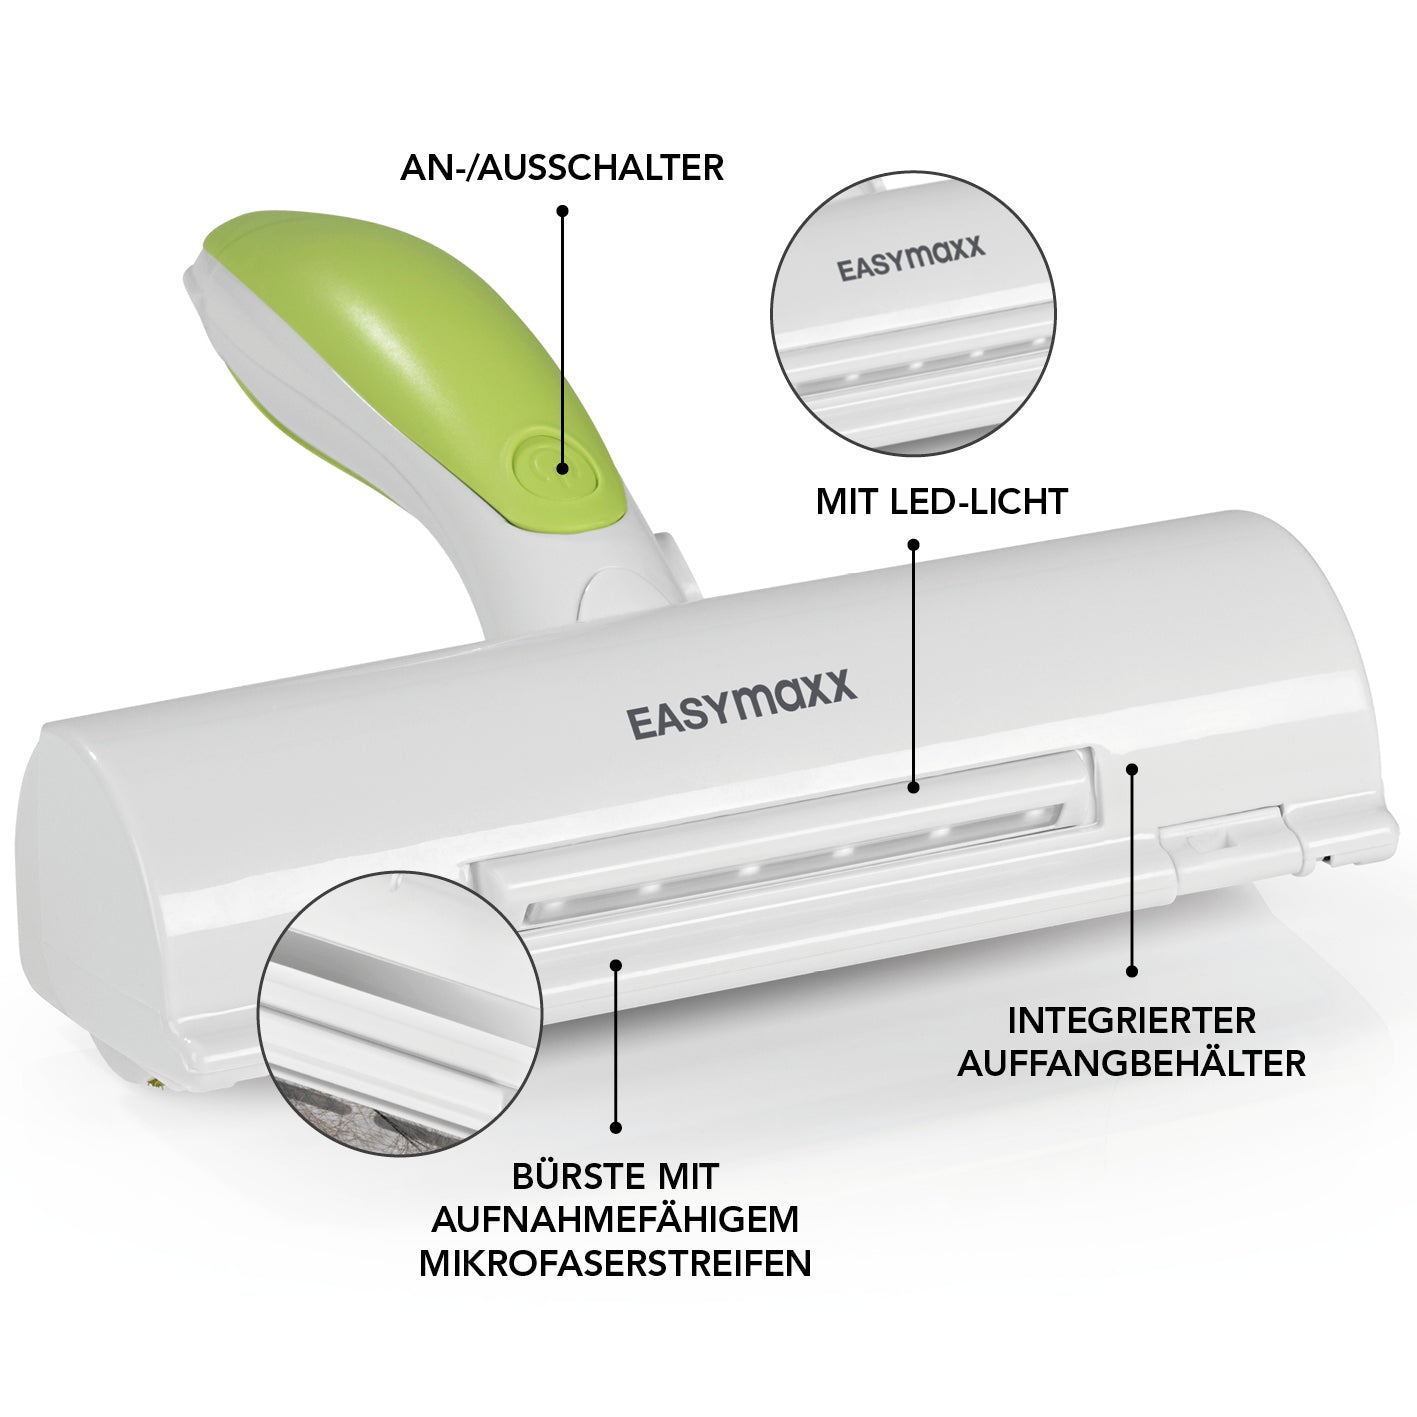 Akku-Tierhaar-Fusselrolle mit LED-Beleuchtung - weiß/limegreen